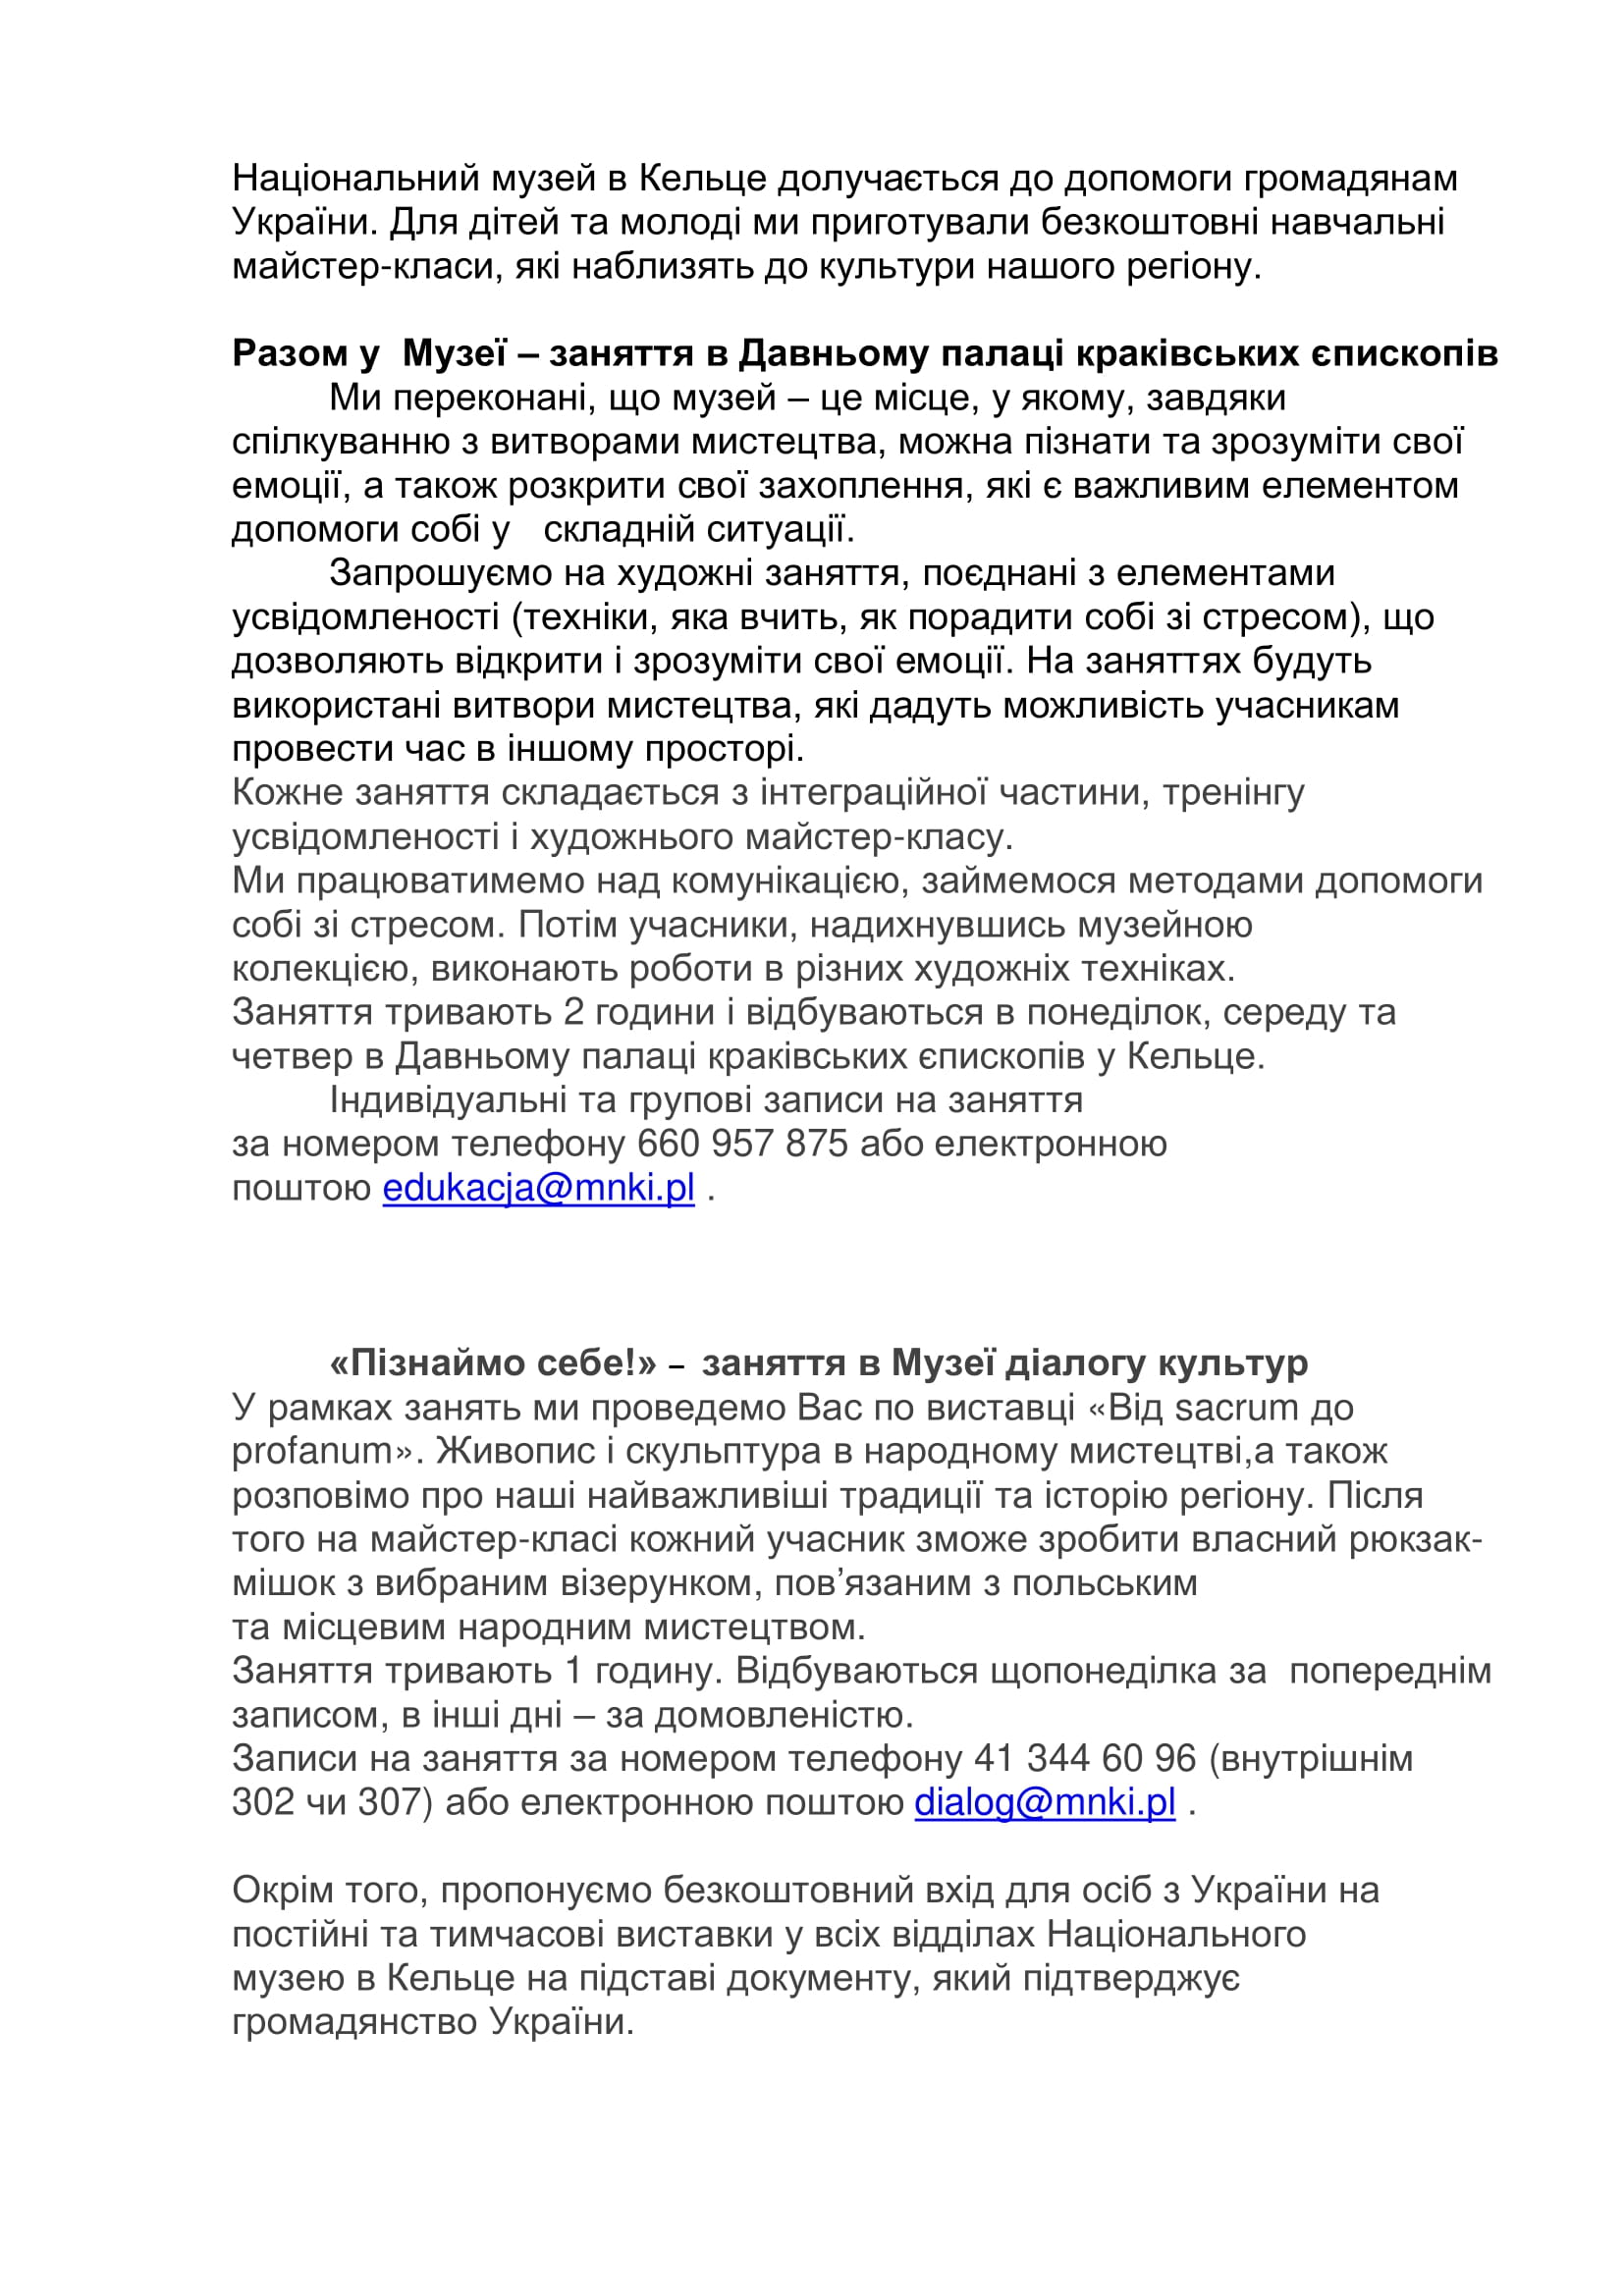 Wersja ulotki z bezpłatnymi zajęciami w języku ukraińskim